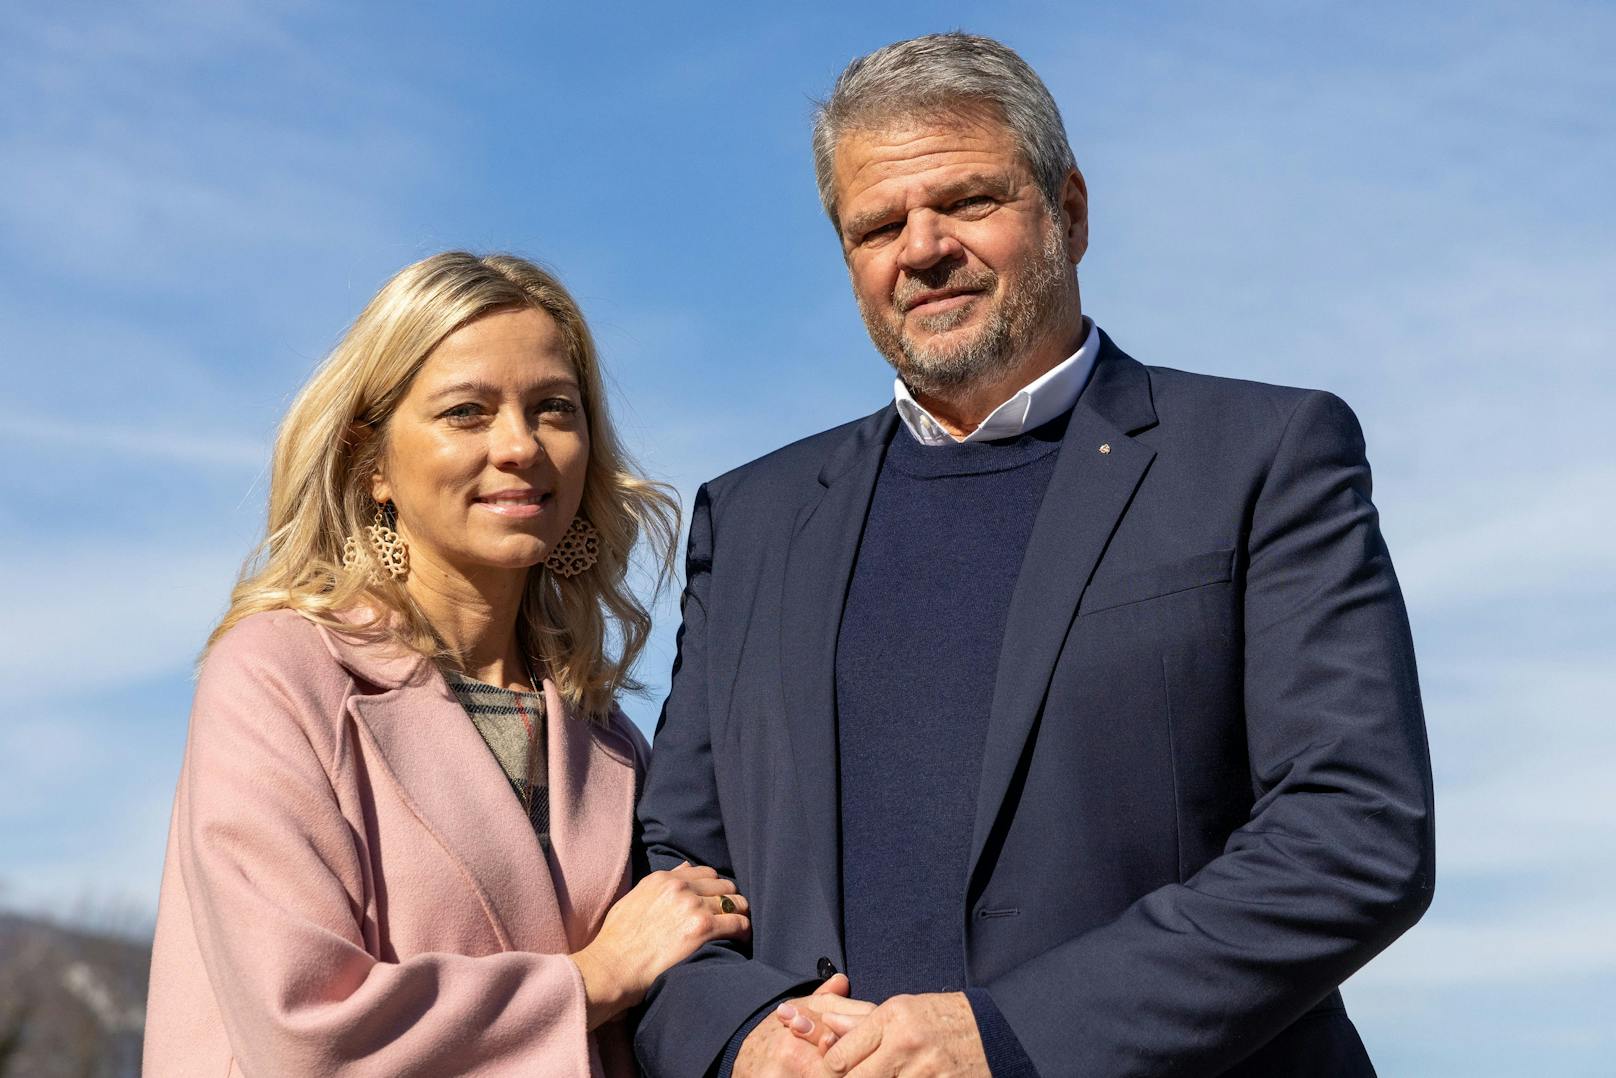 Gerhard Köfer vom "Team Kärnten" kam mit Ehefrau Evelyn zur Stimmabgabe nach Spittal. Der Spitzenkandidat der Partei, die aus dem "Team Stronach" hervorging, hat ein ambitioniertes Ziel: den Landeshauptmann-Posten.